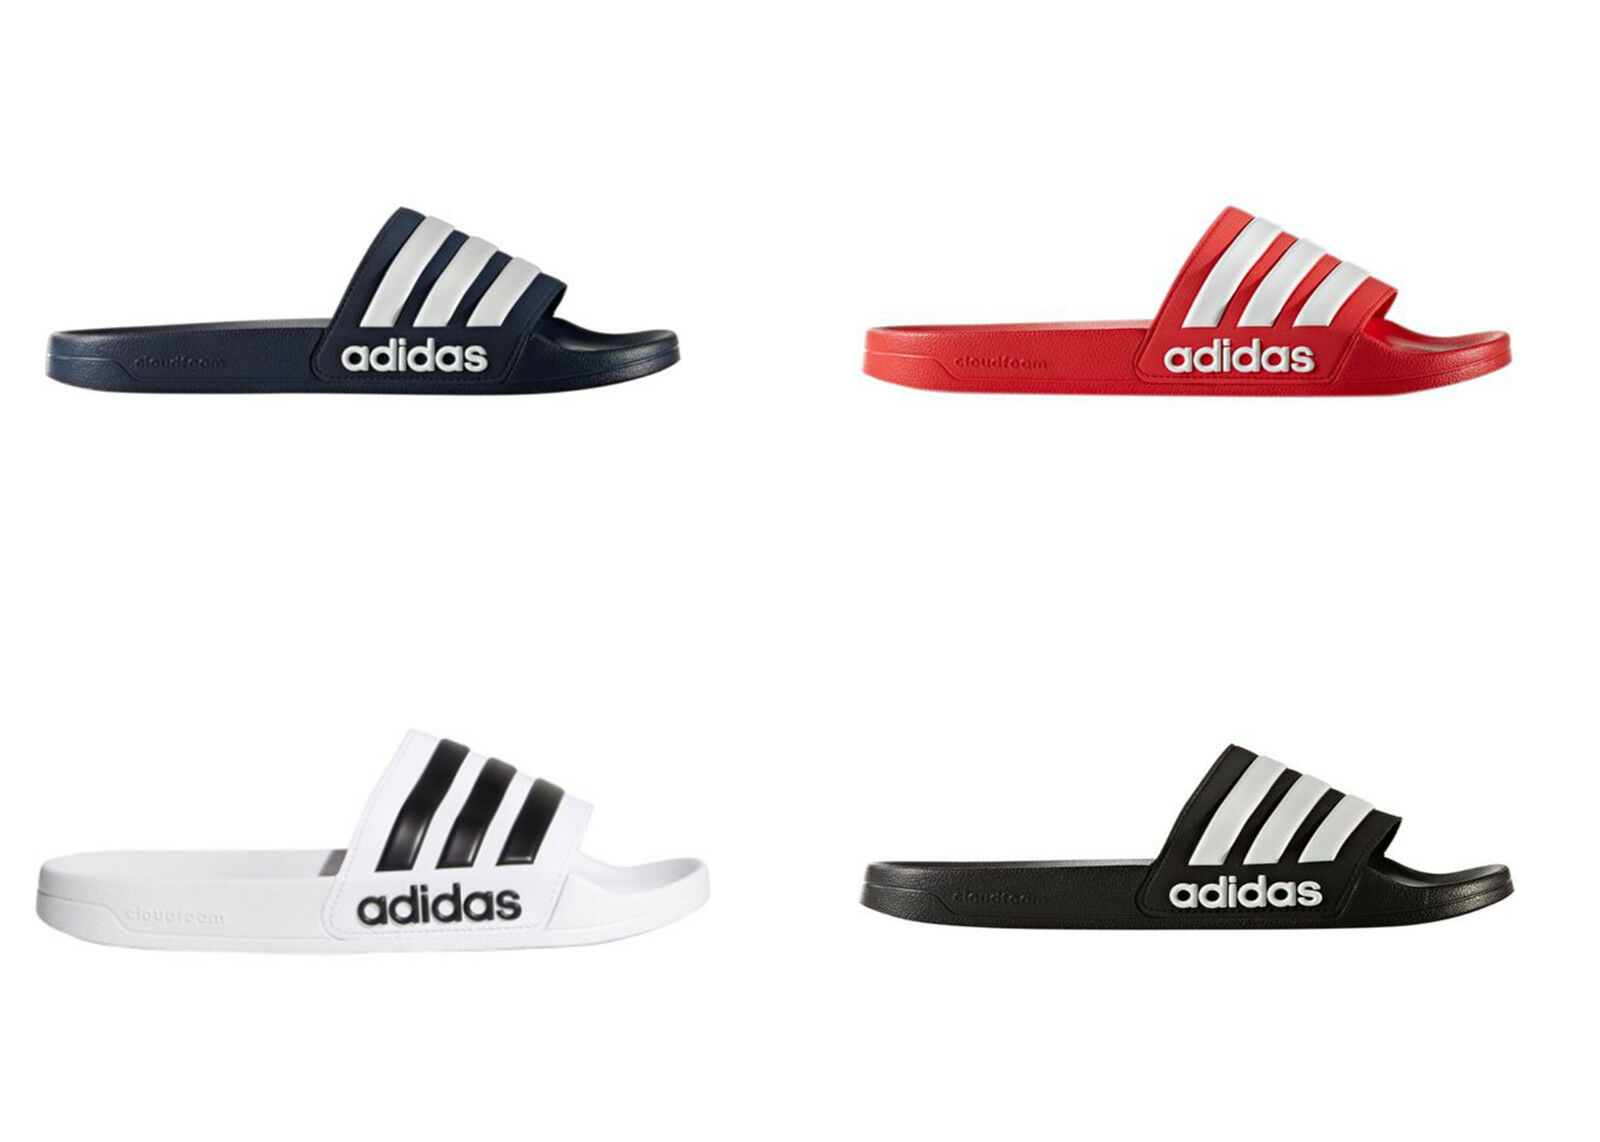 Adidas Men's Adilette Slides / Sandal Shoe Navy Red Black Or White